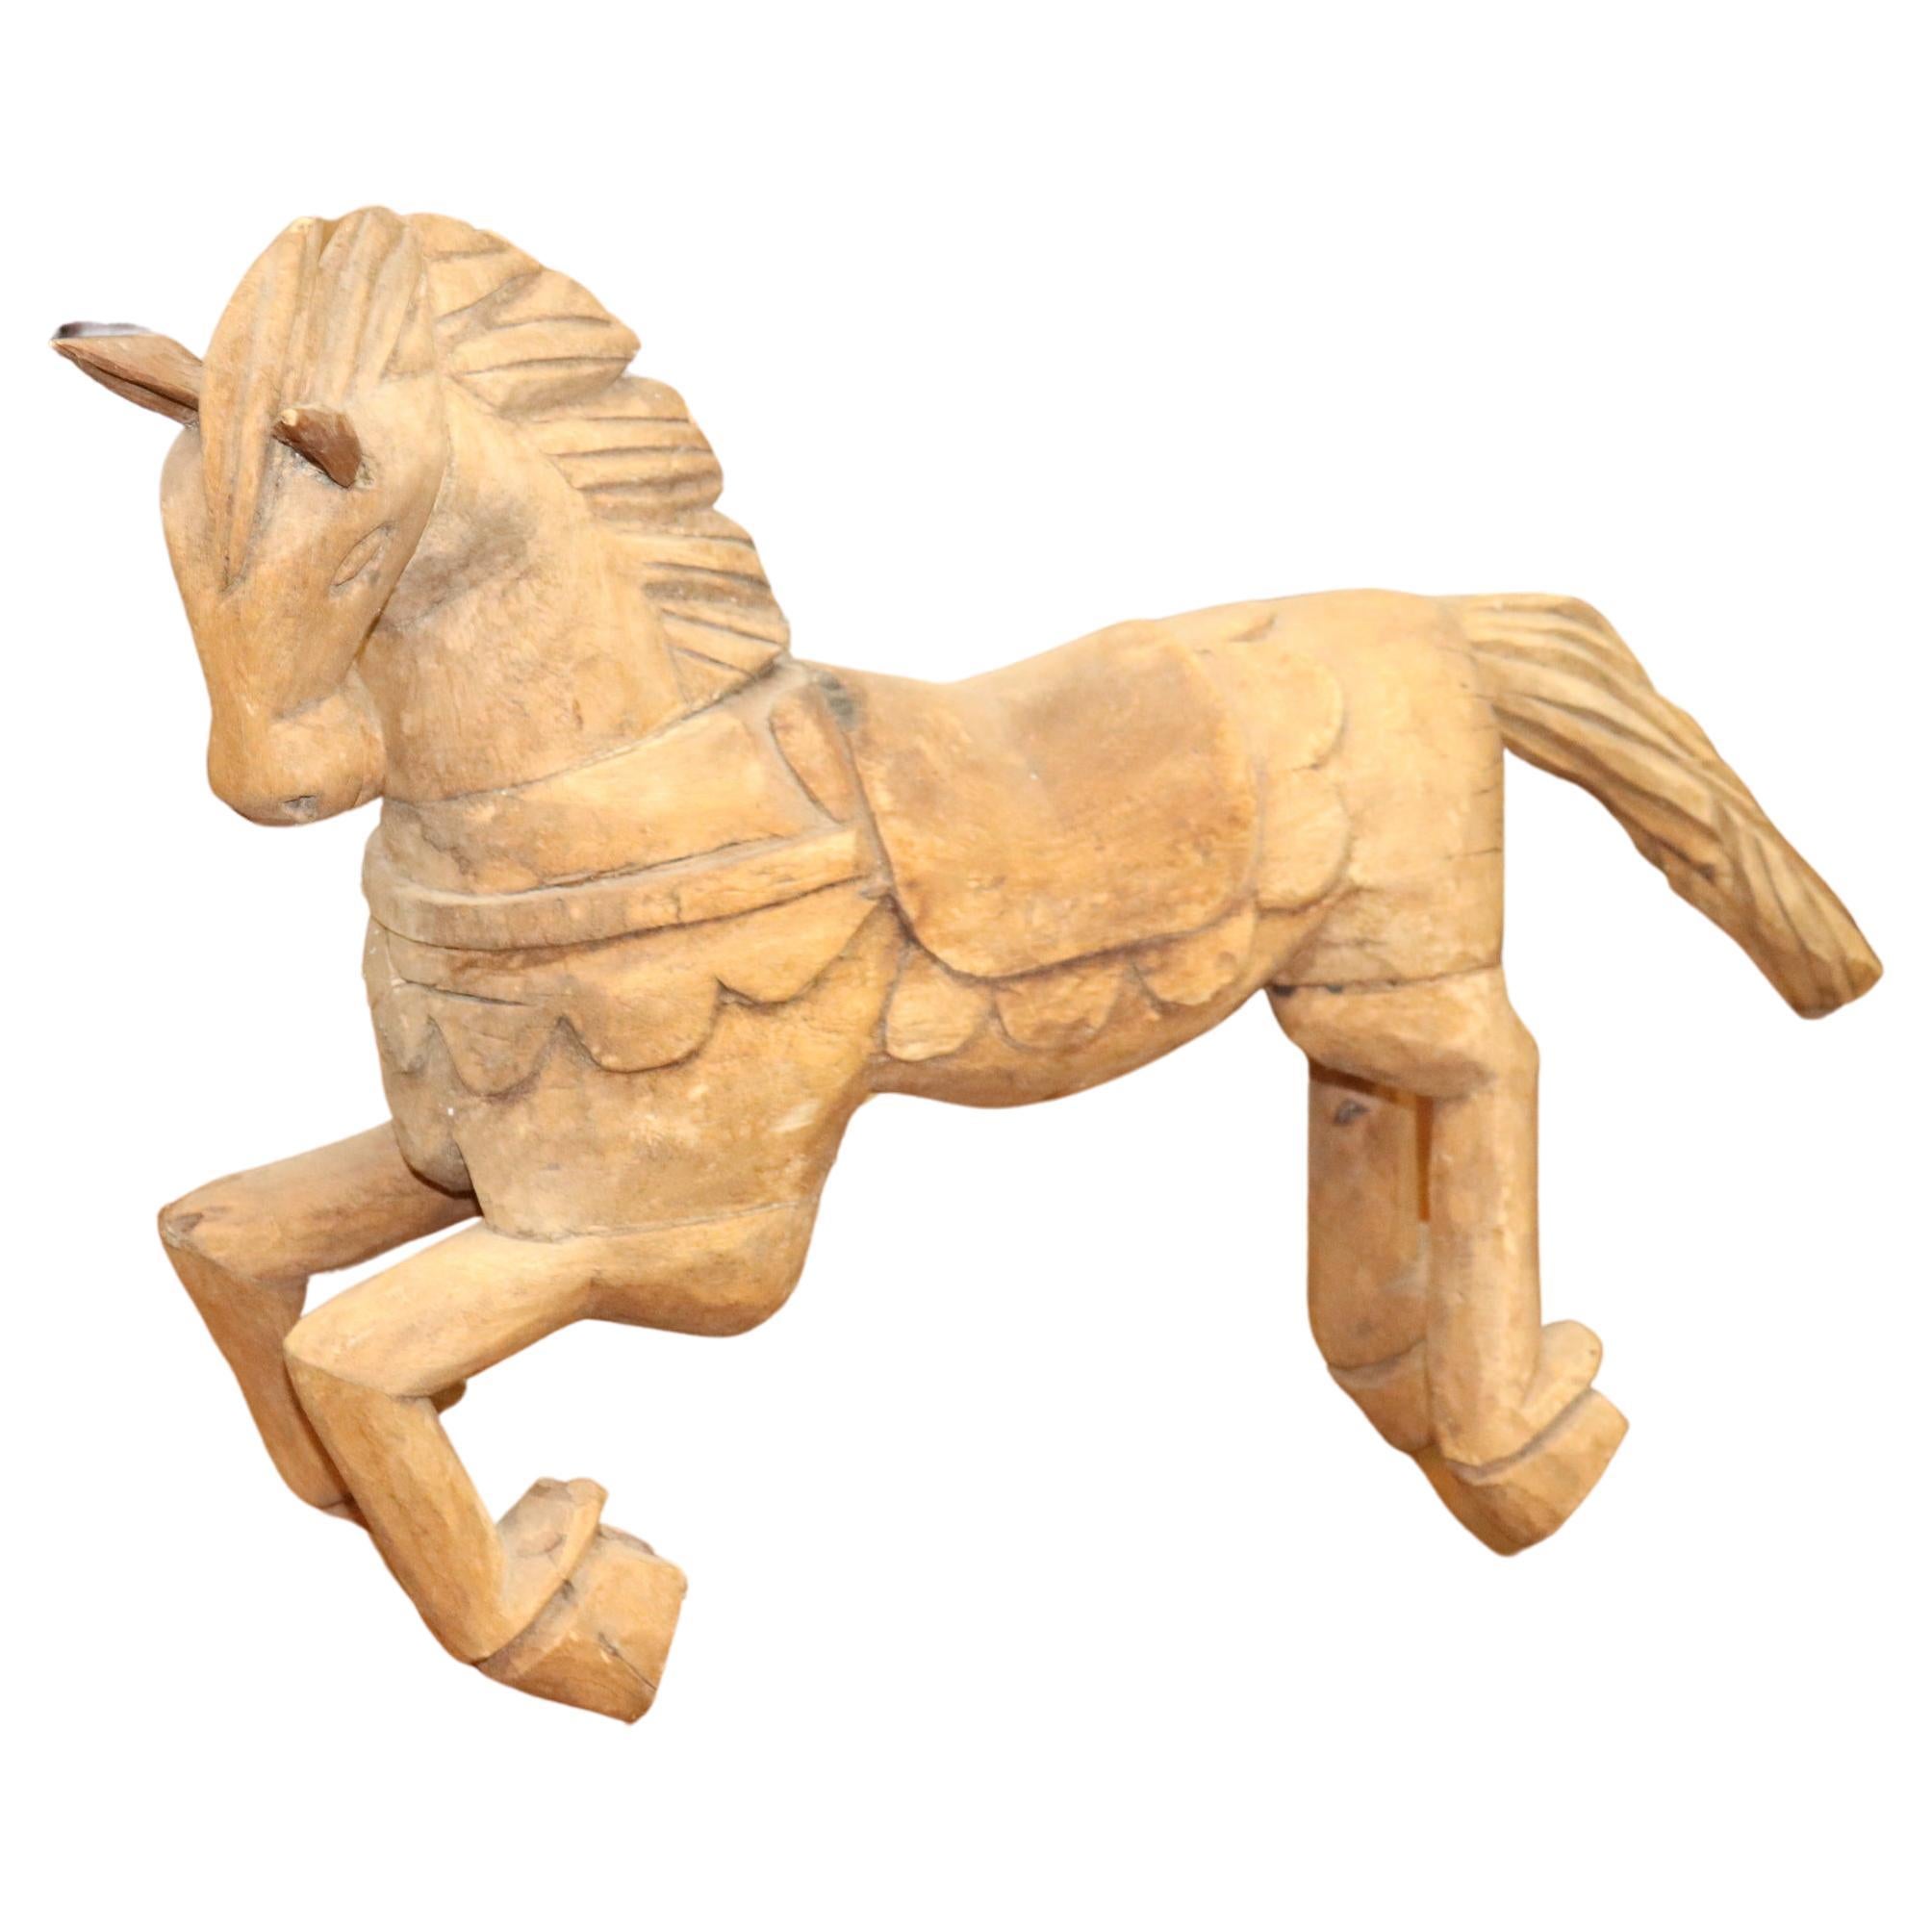 Primitive Carved Wooden Horse Sculpture 